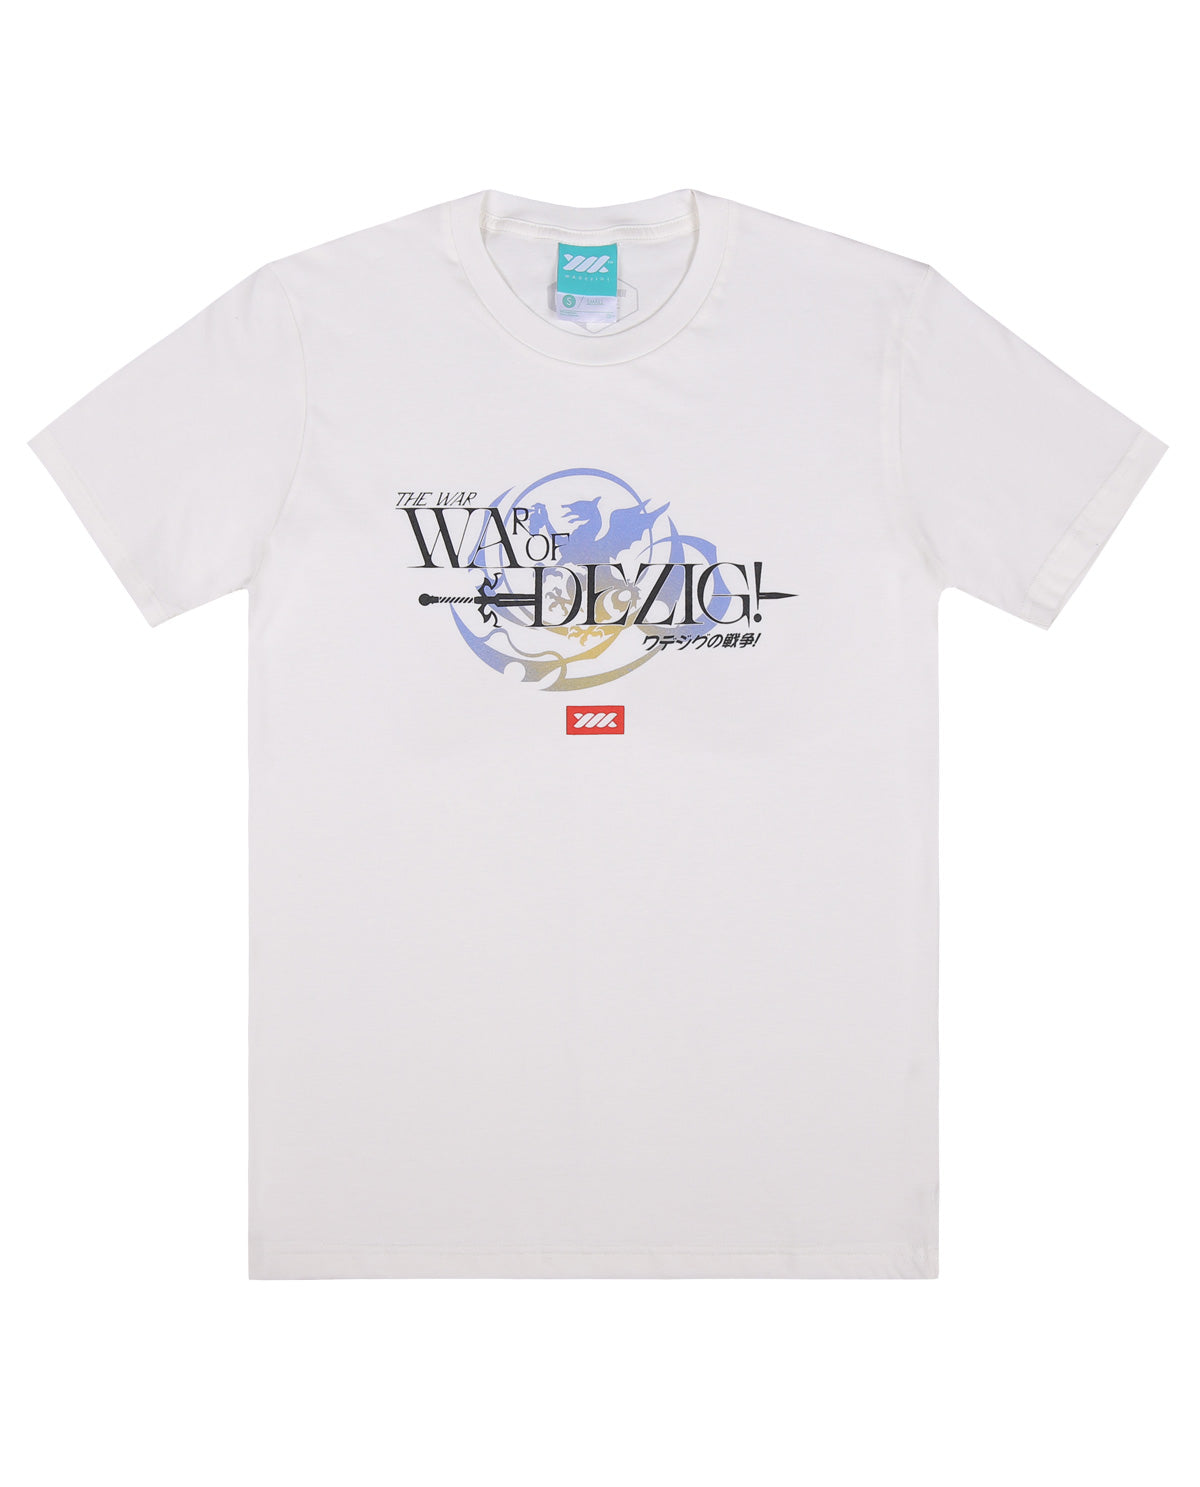 Wadezig! T-Shirt -Folklore white tees